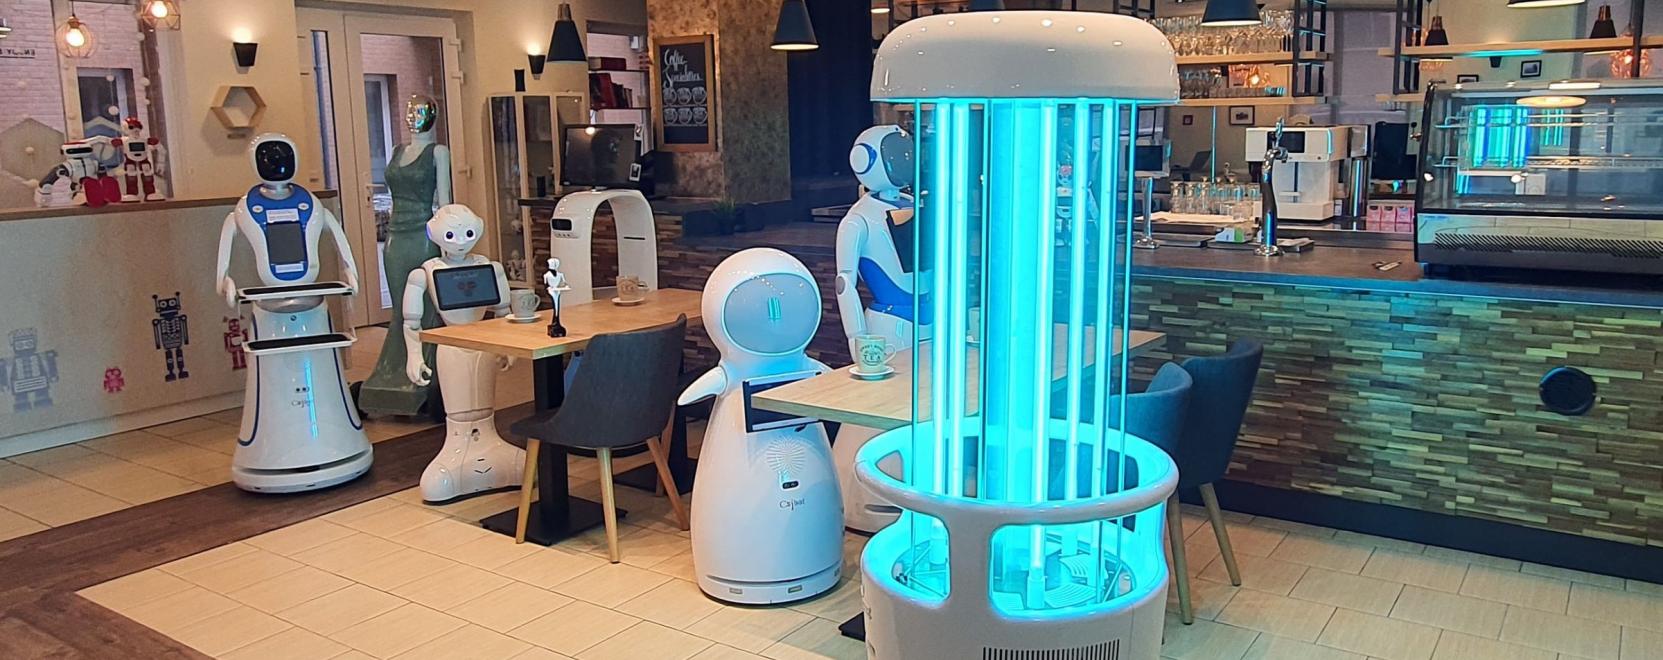 Magyar fejlesztésű fertőtlenítő robot a koronavírus ellen